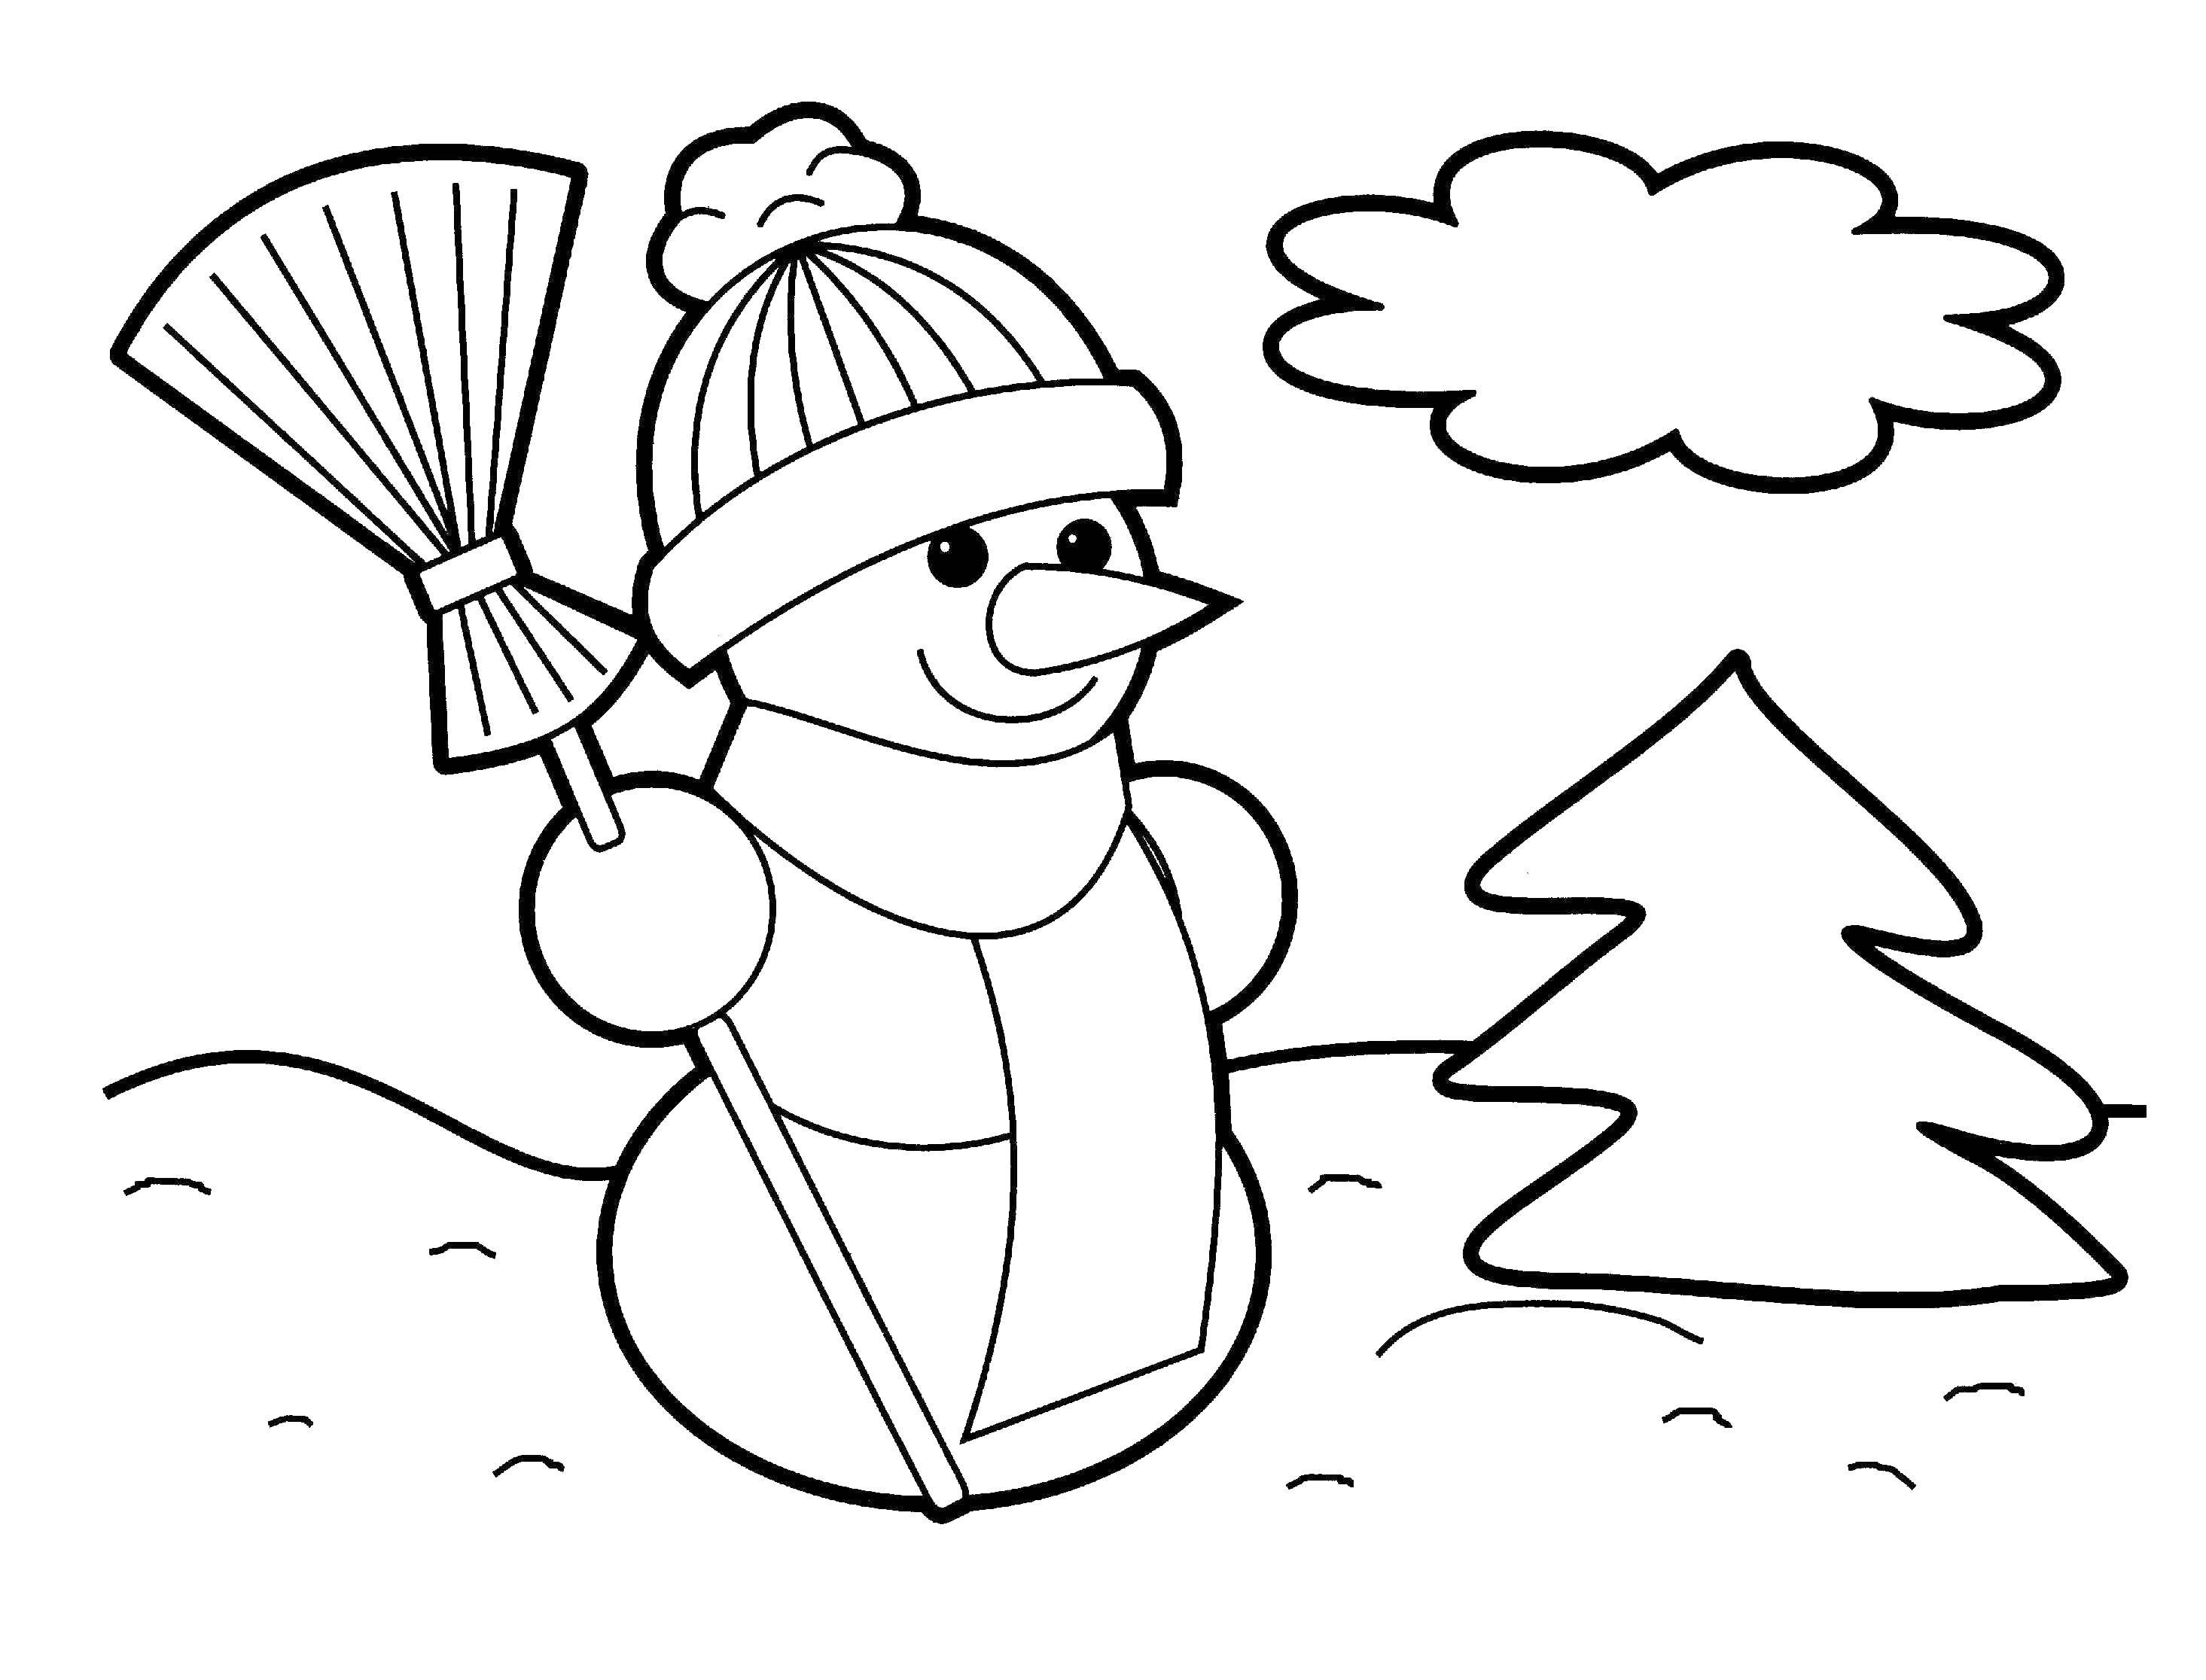 Снеговик с елочкой раскраска